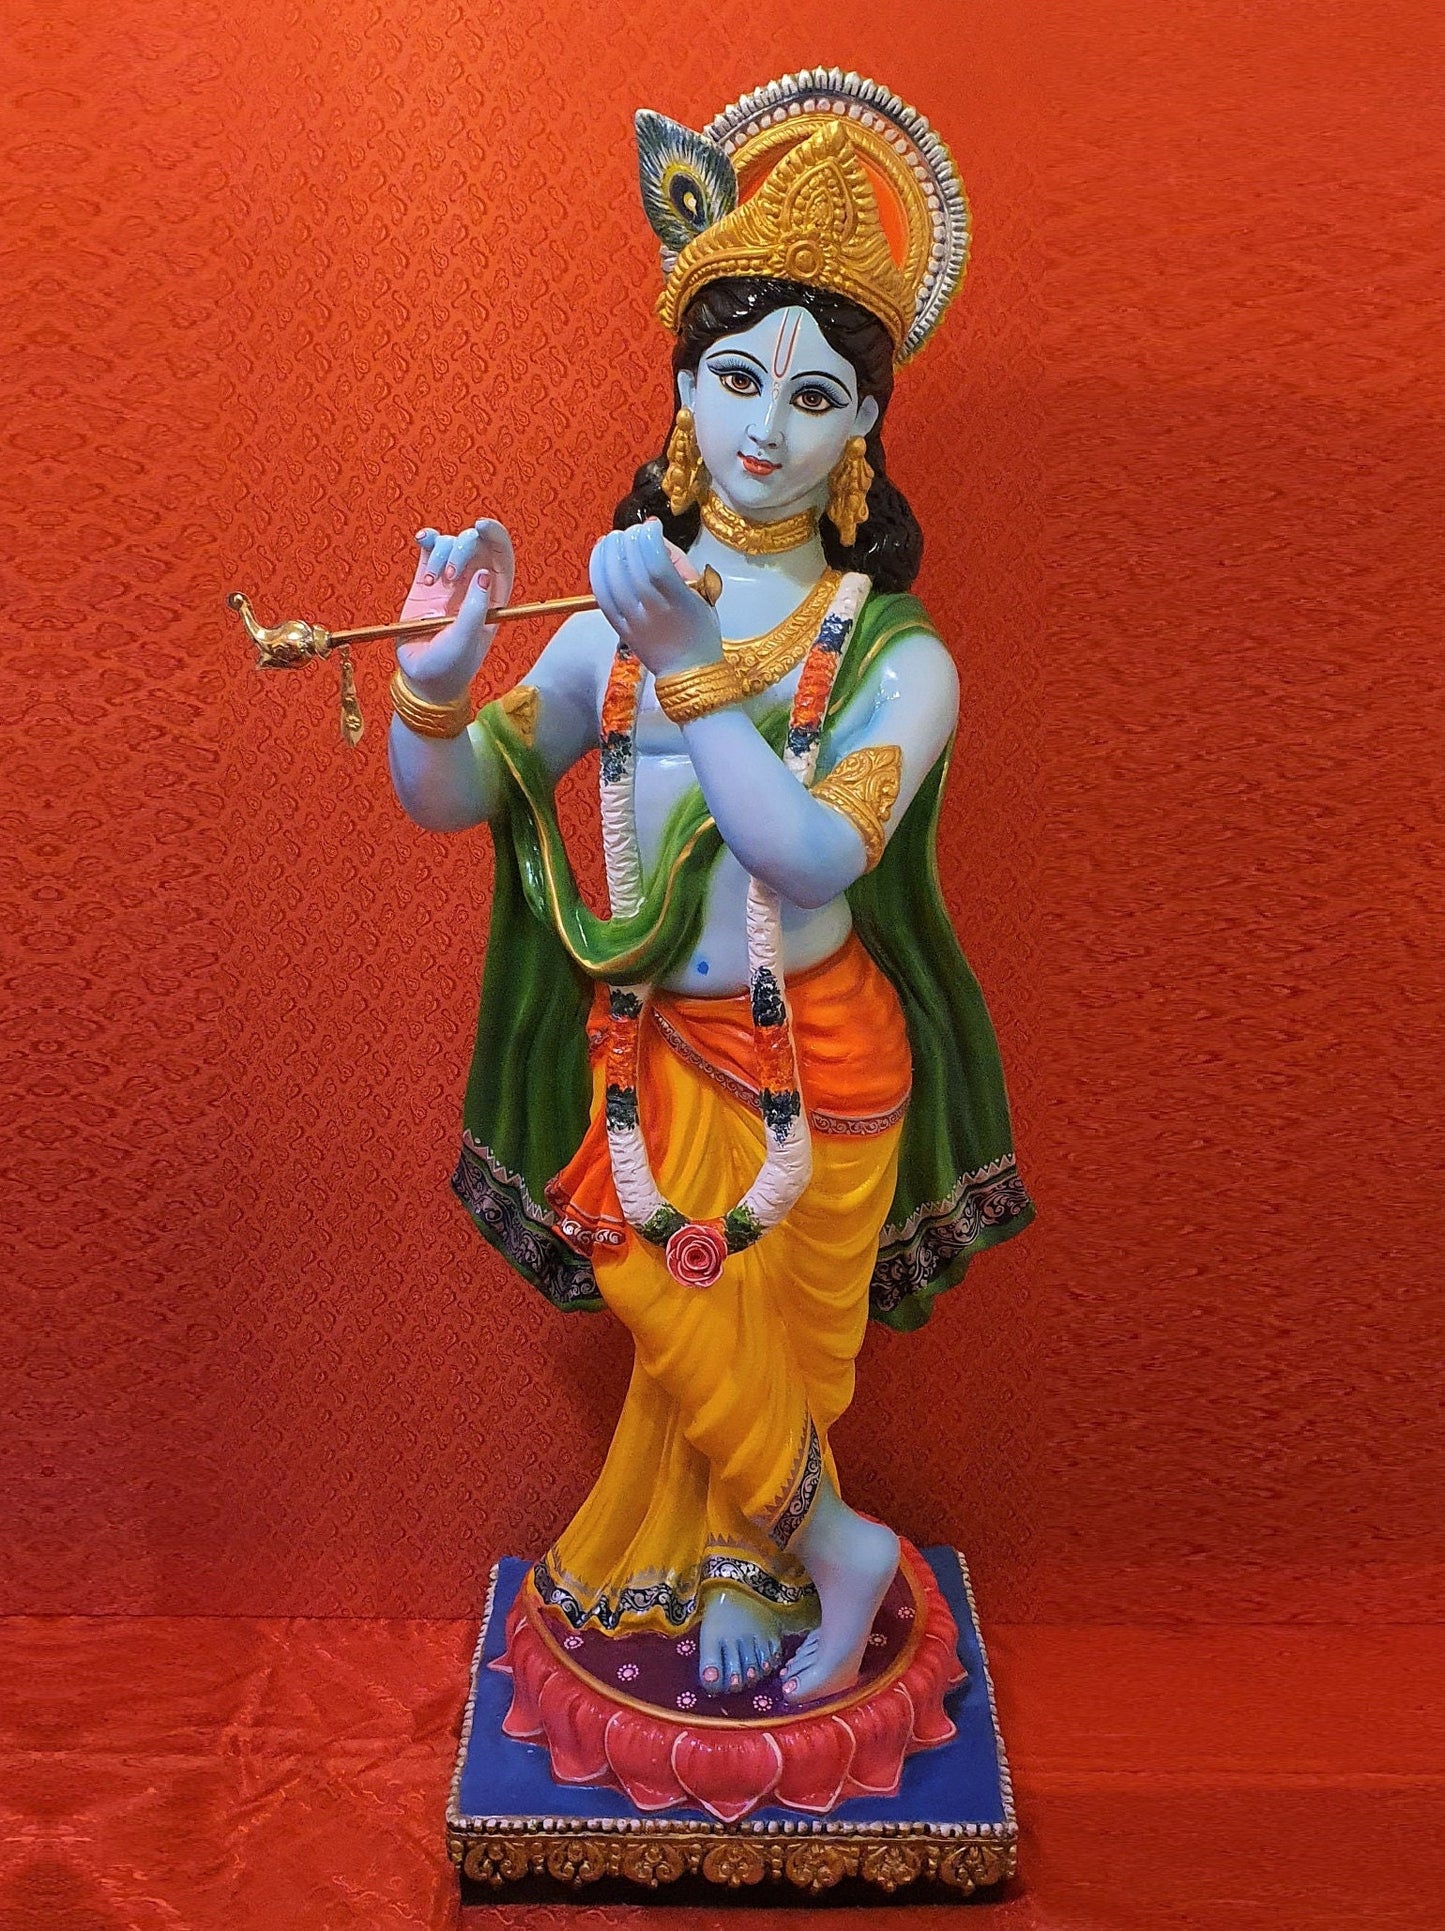 Large Lord Krishna murti